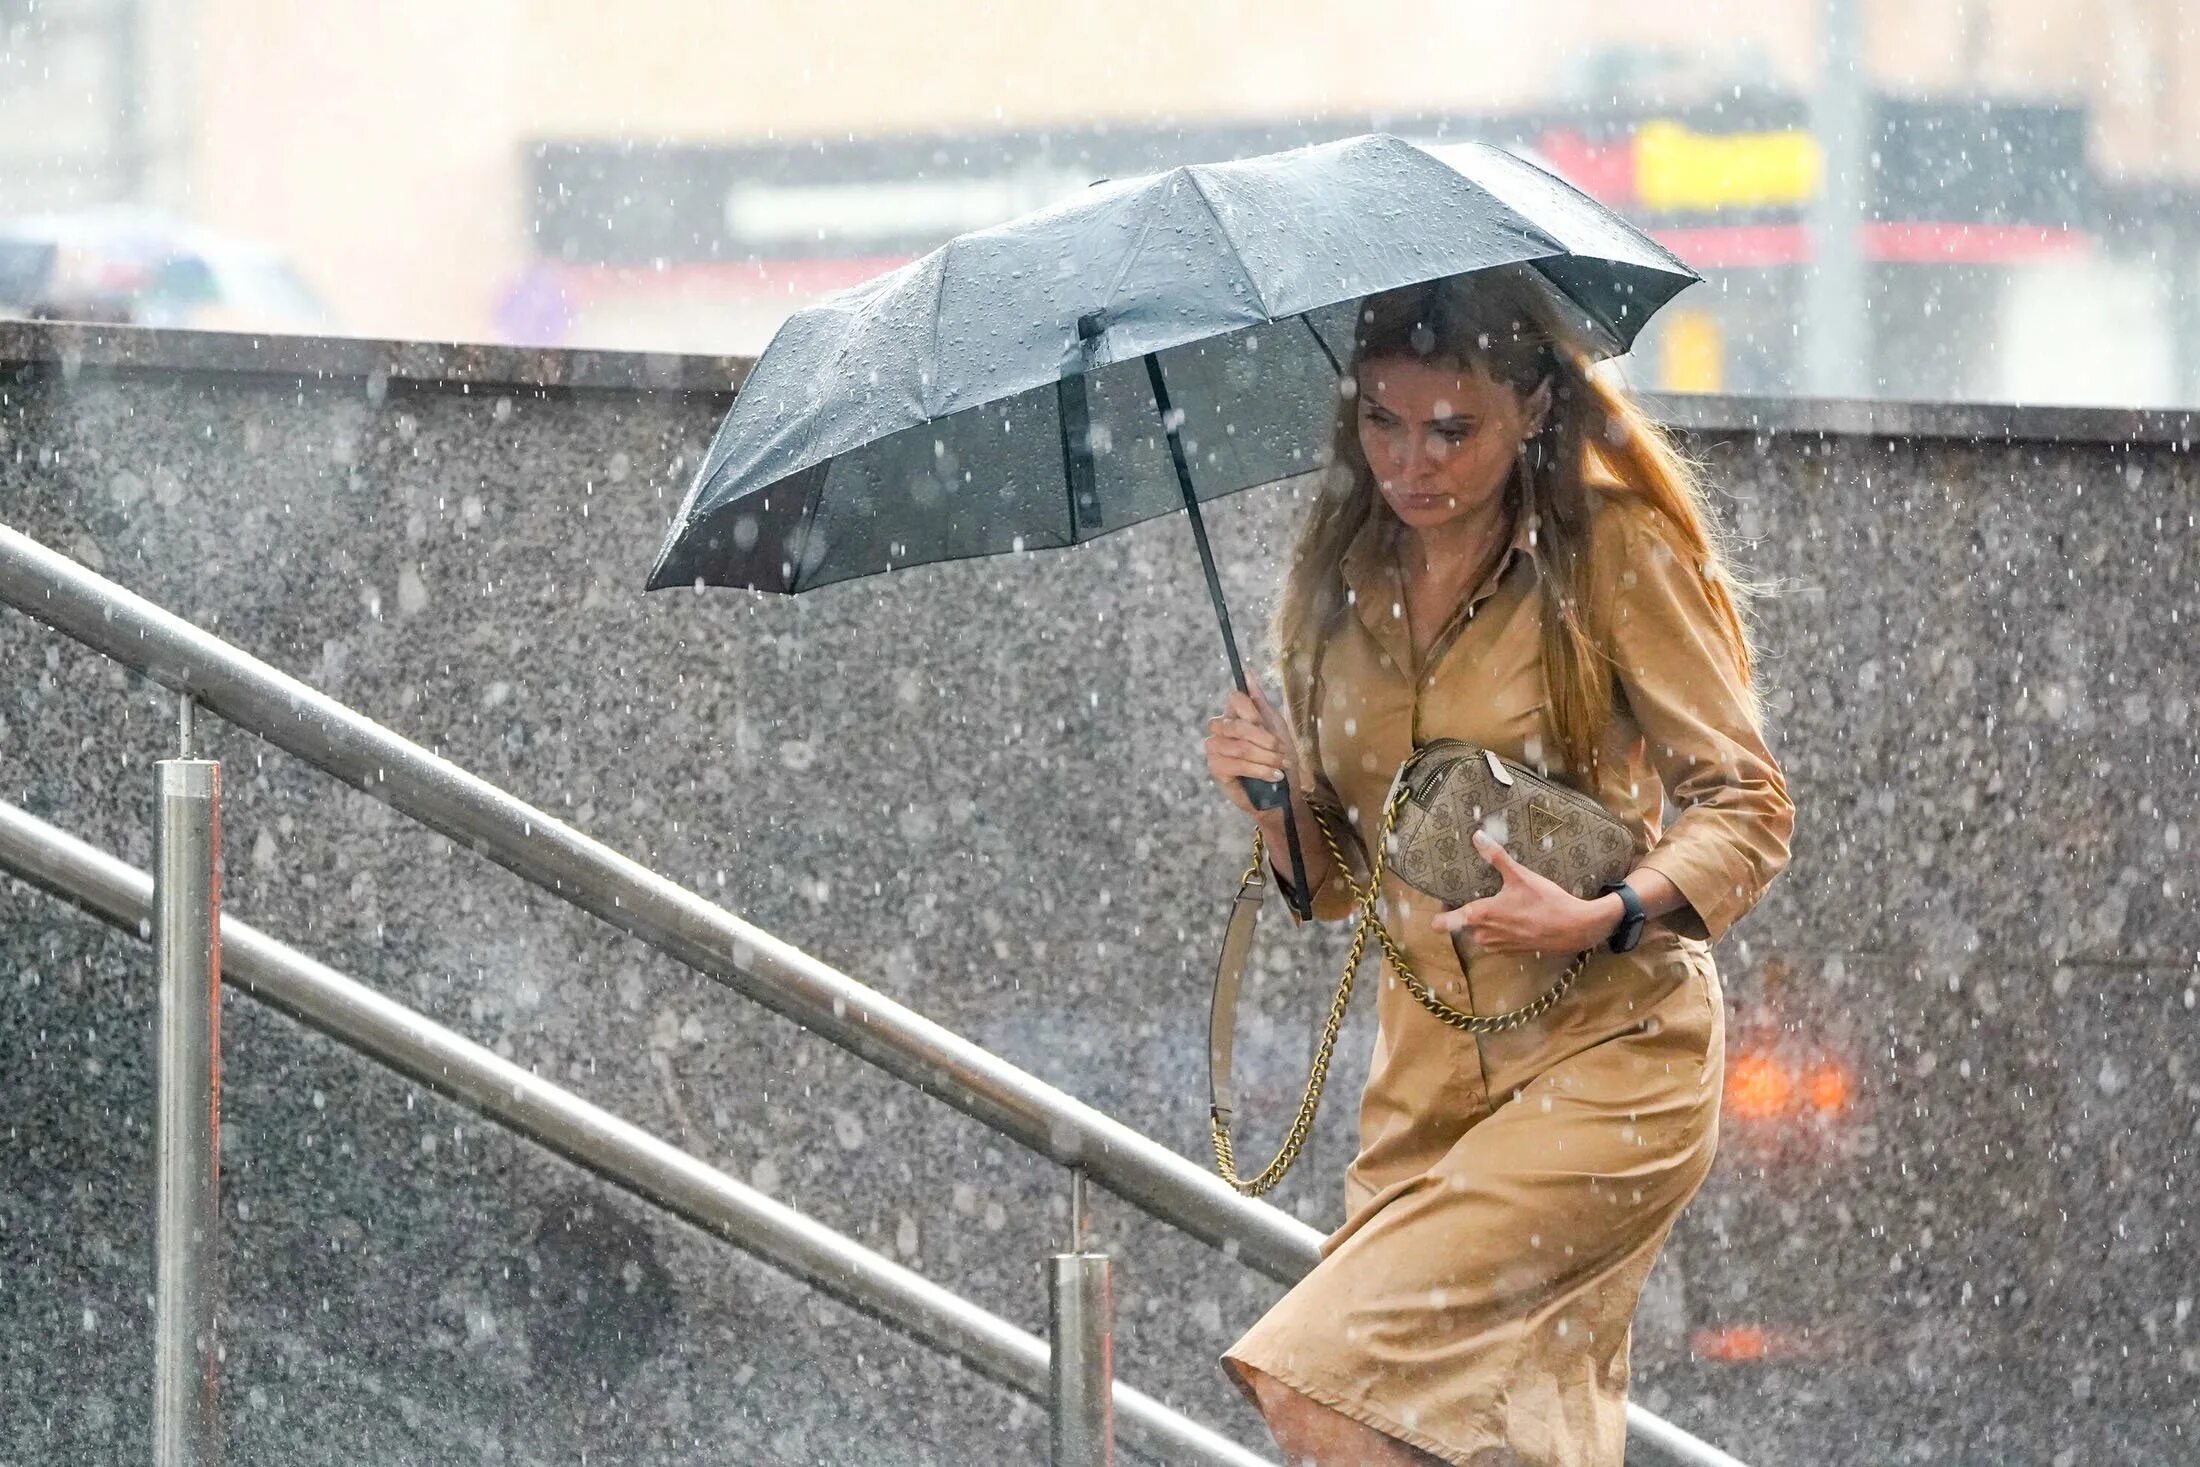 Завтра 2 июня 2020 ожидается незначительное похолодание. Ливень. Сильный дождь. Дождь в Москве. Девушка под дождем.